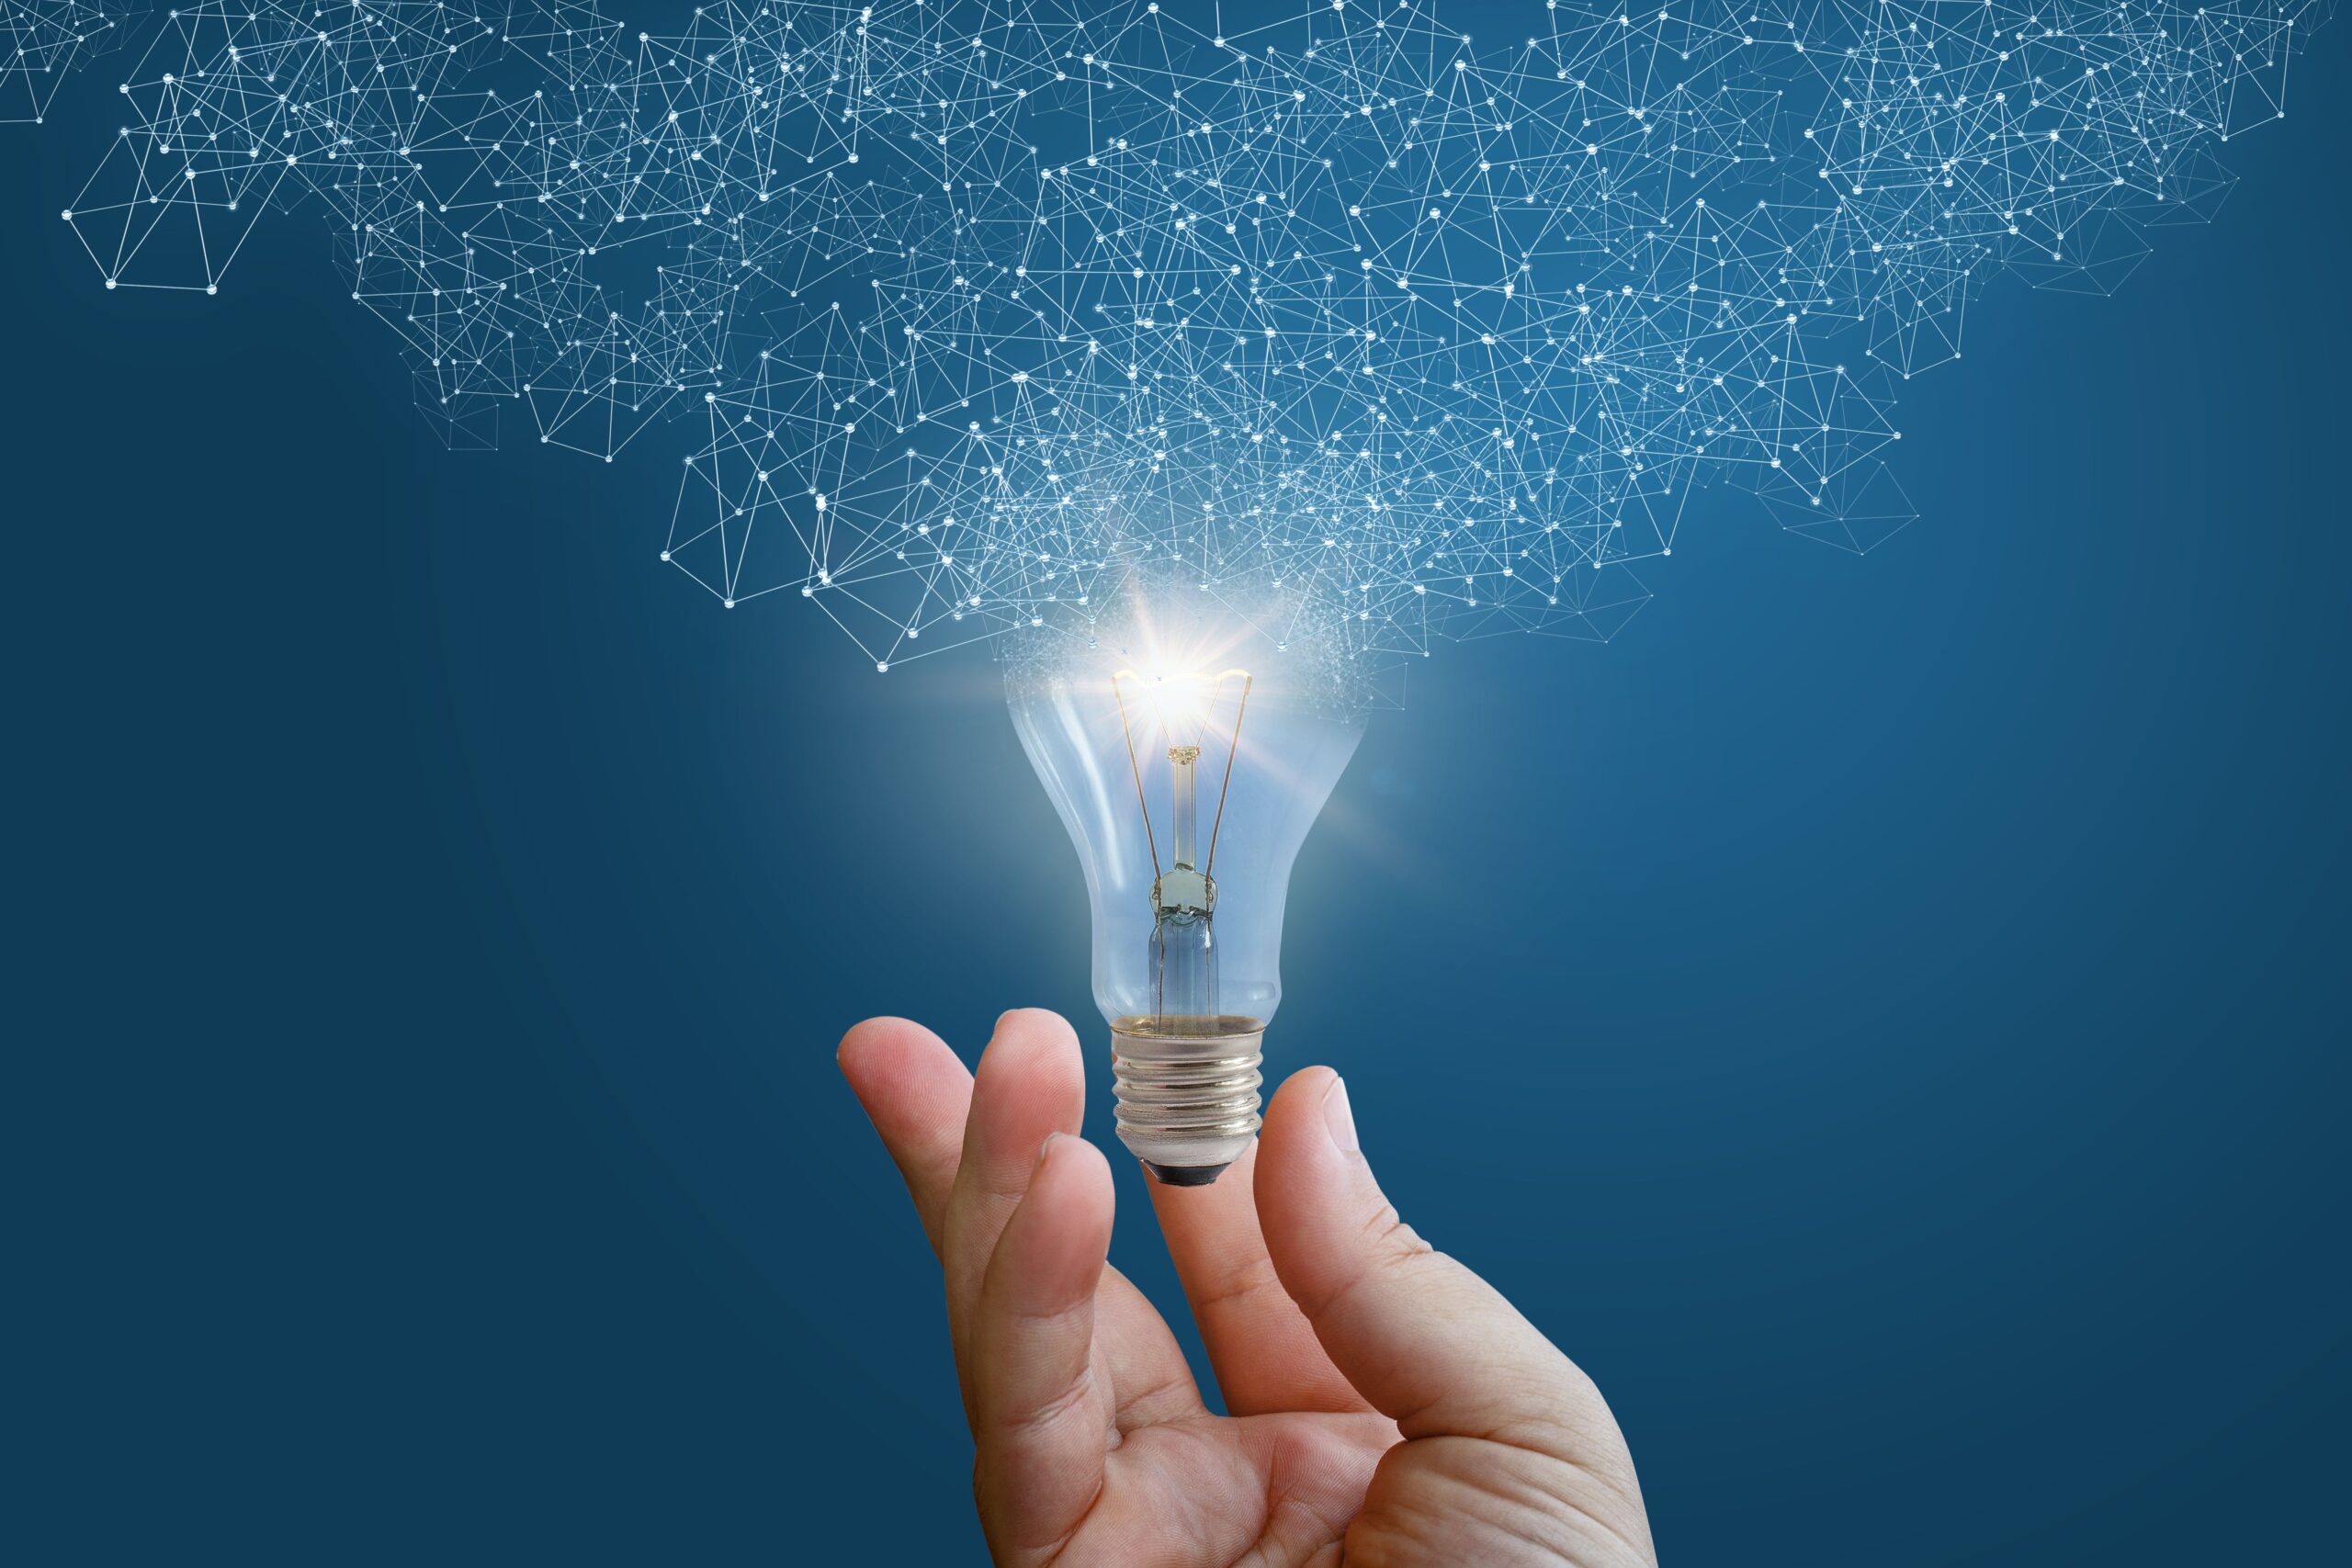 lightbulb of innovation spreading light